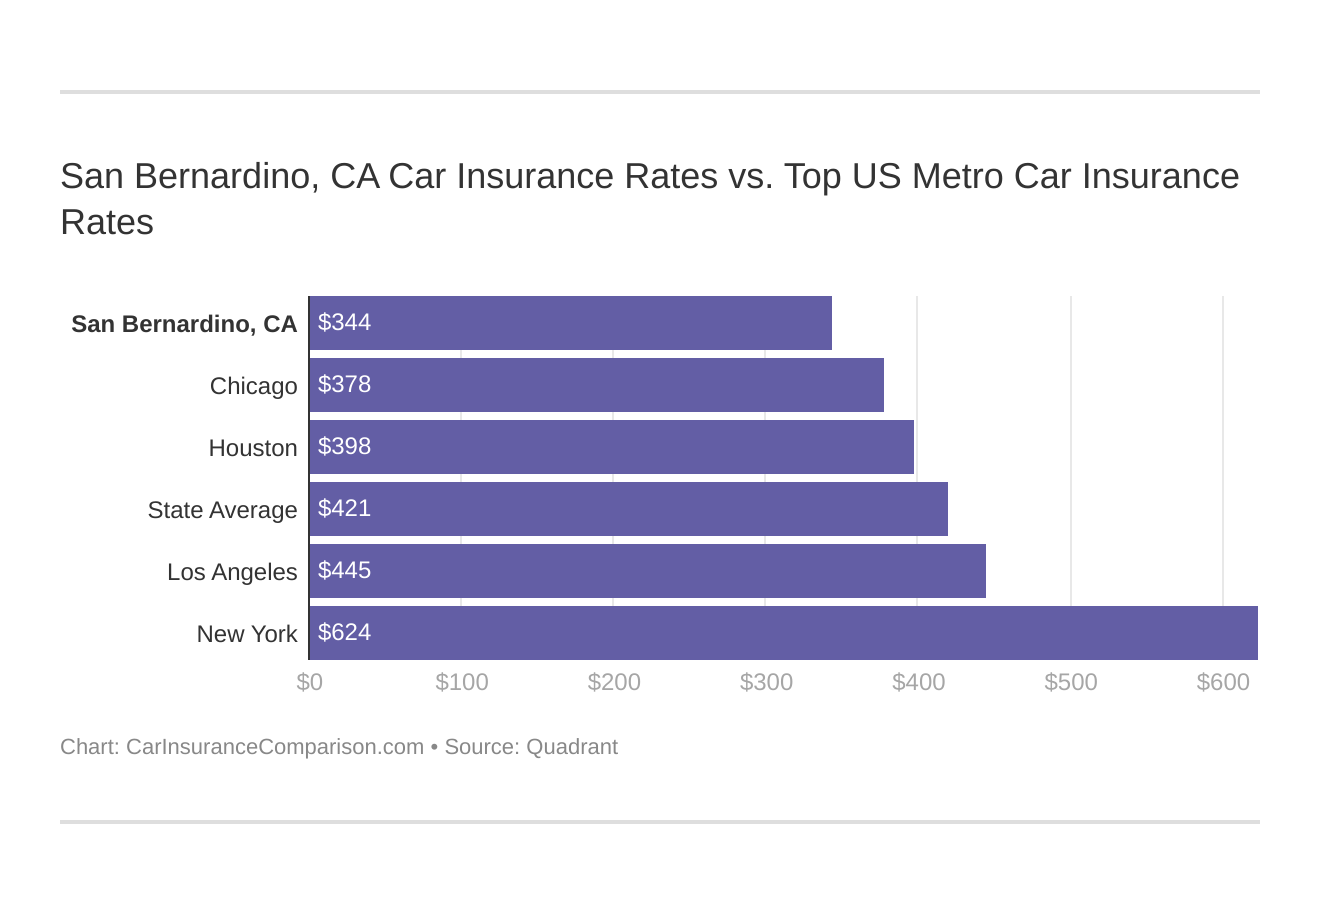 San Bernardino, CA Car Insurance Rates vs. Top US Metro Car Insurance Rates